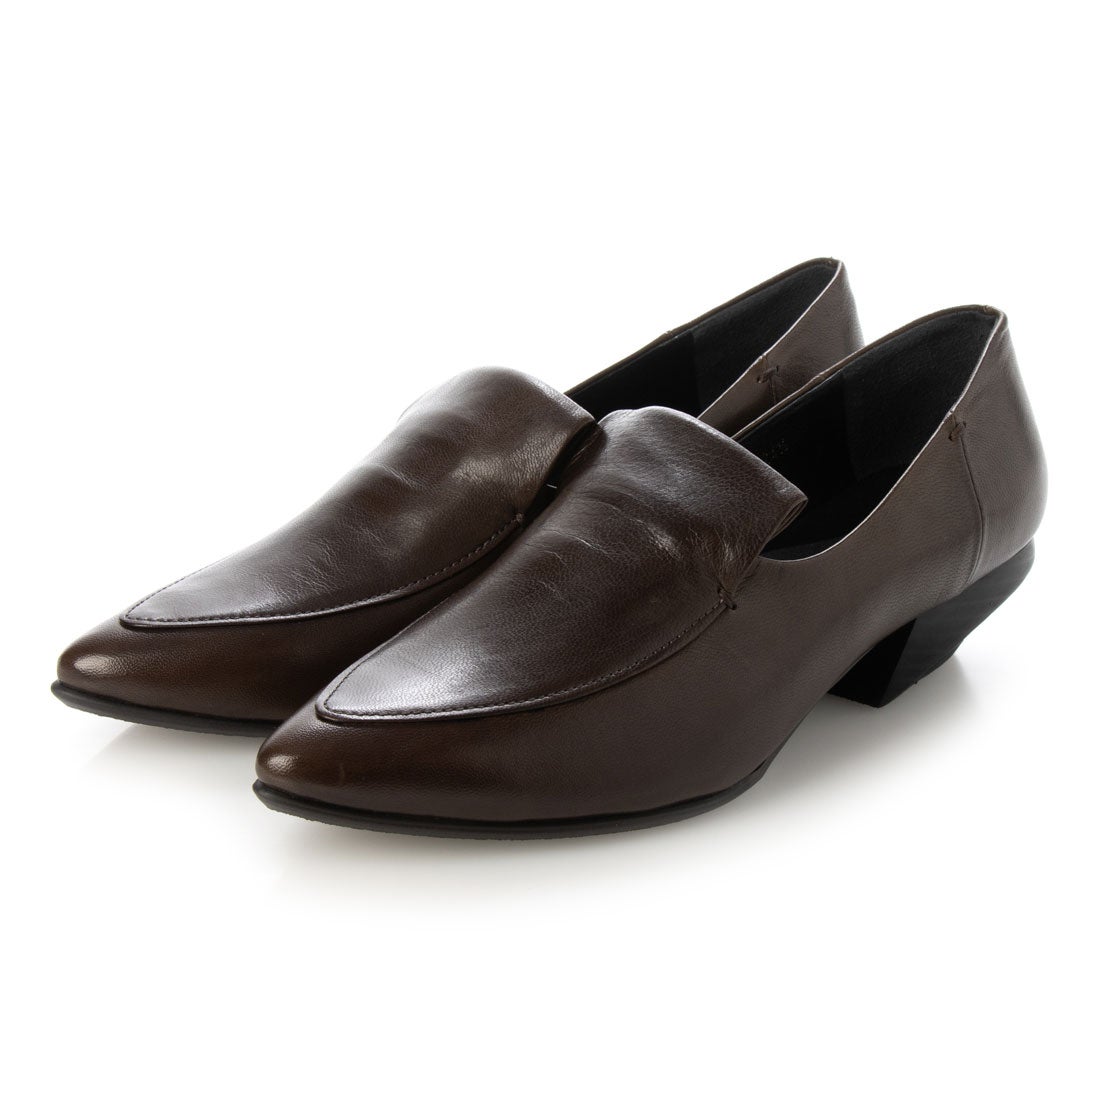 【新品】メダリオンシューズ 革靴 ローファー ホワイト 24cm シンプル